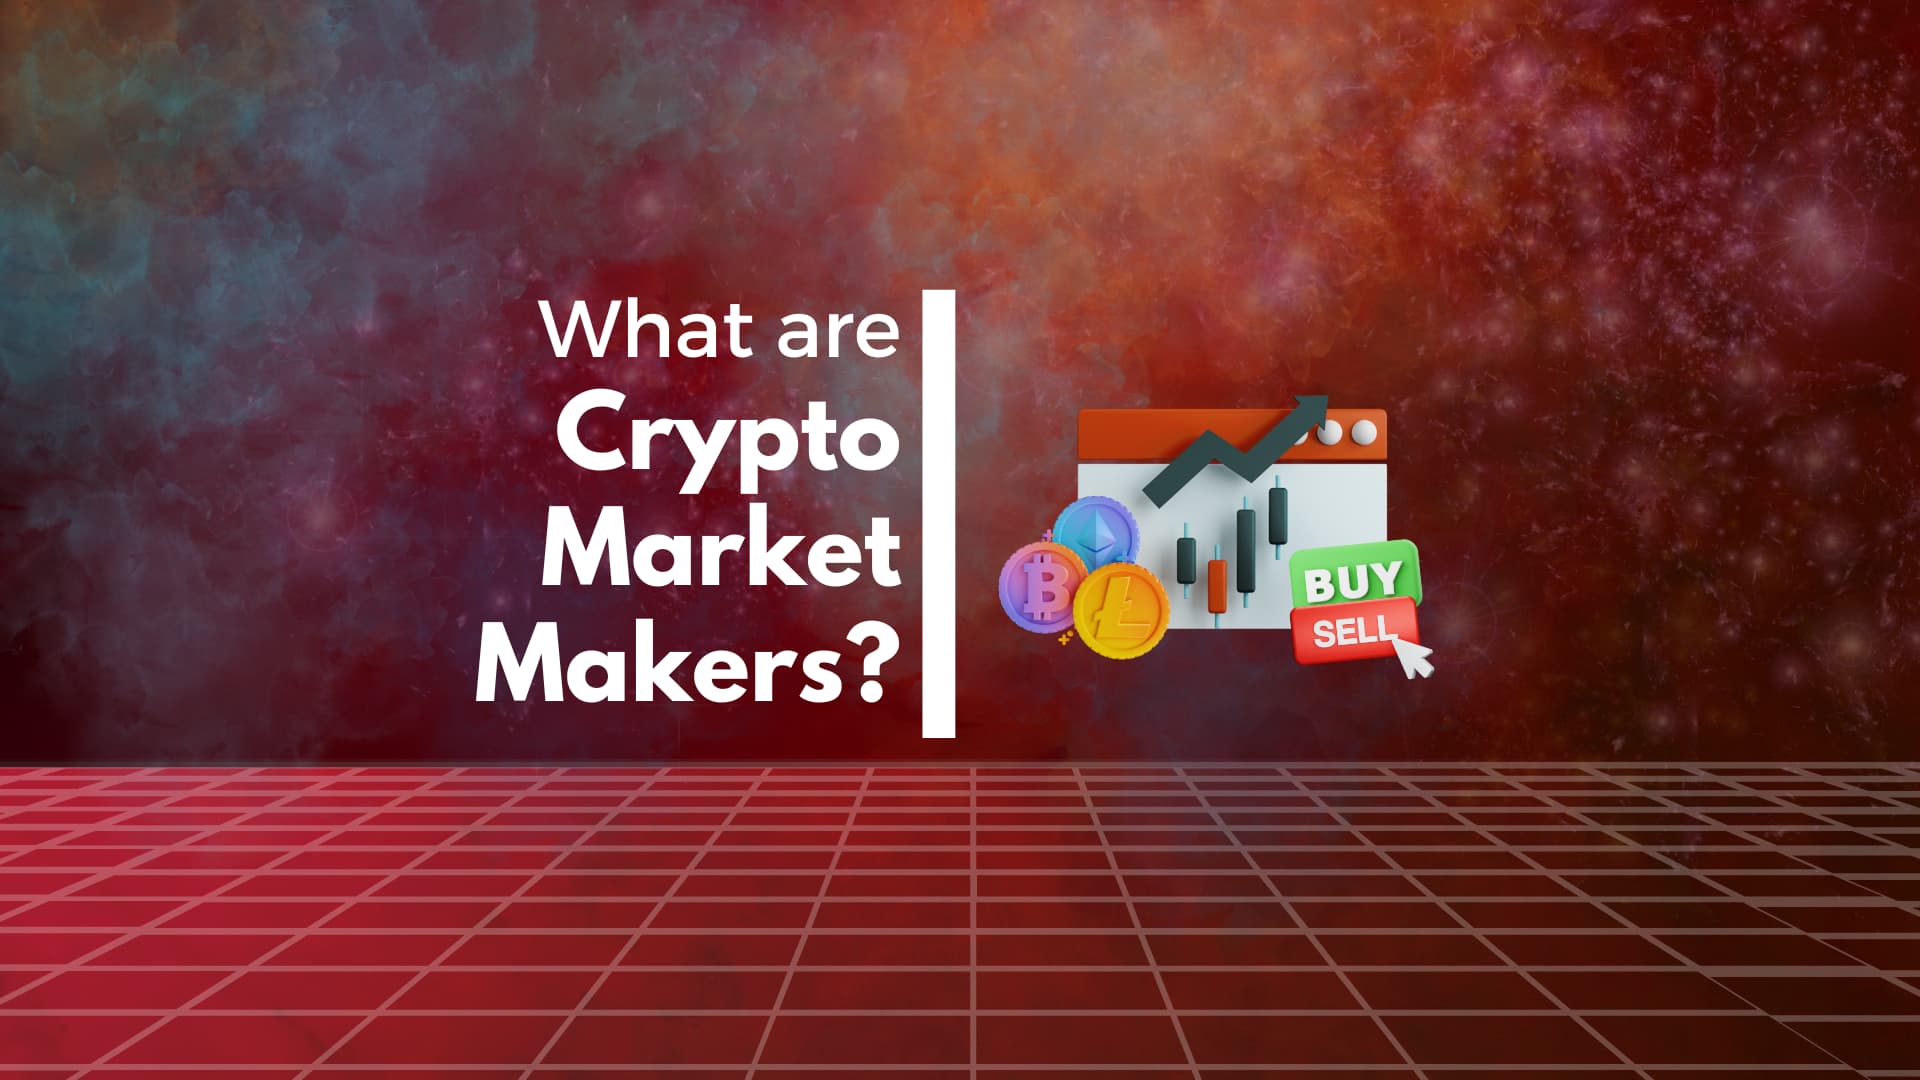 Market Maker in Crypto